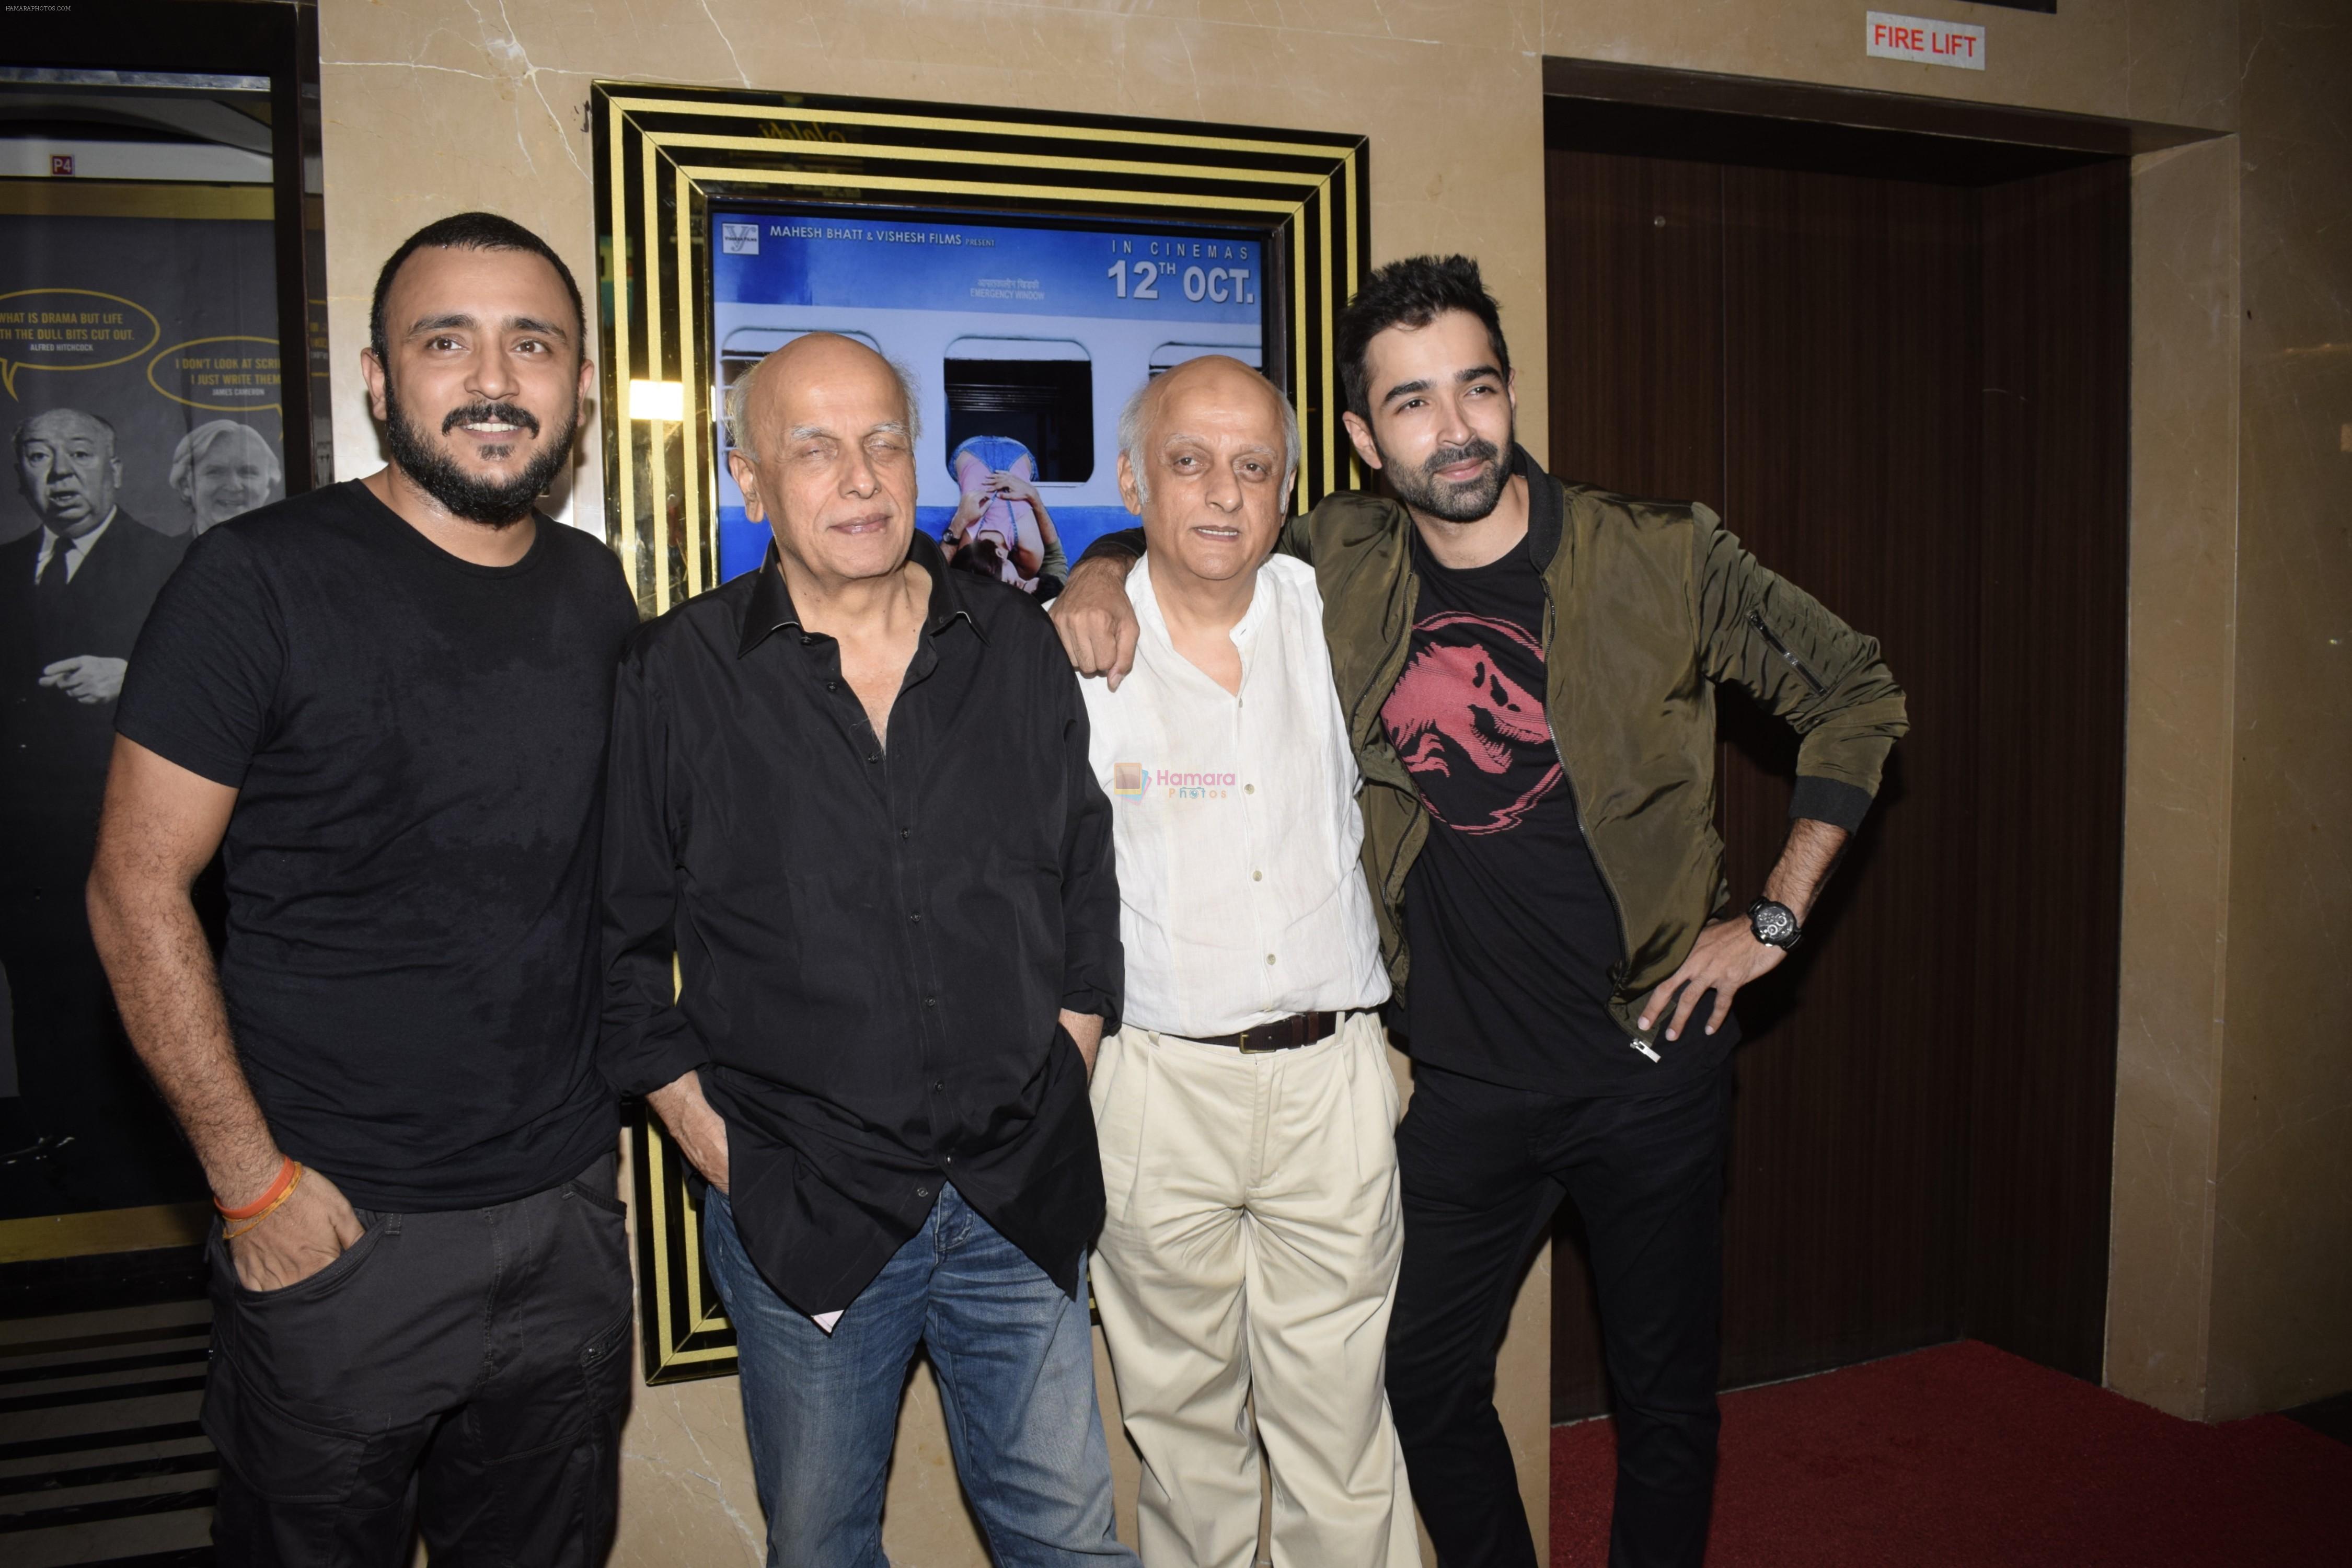 Mahesh Bhatt, Mukesh Bhatt, Varun Mitra at the Screening of film Jalebi in pvr icon, andheri on 11th Oct 2018